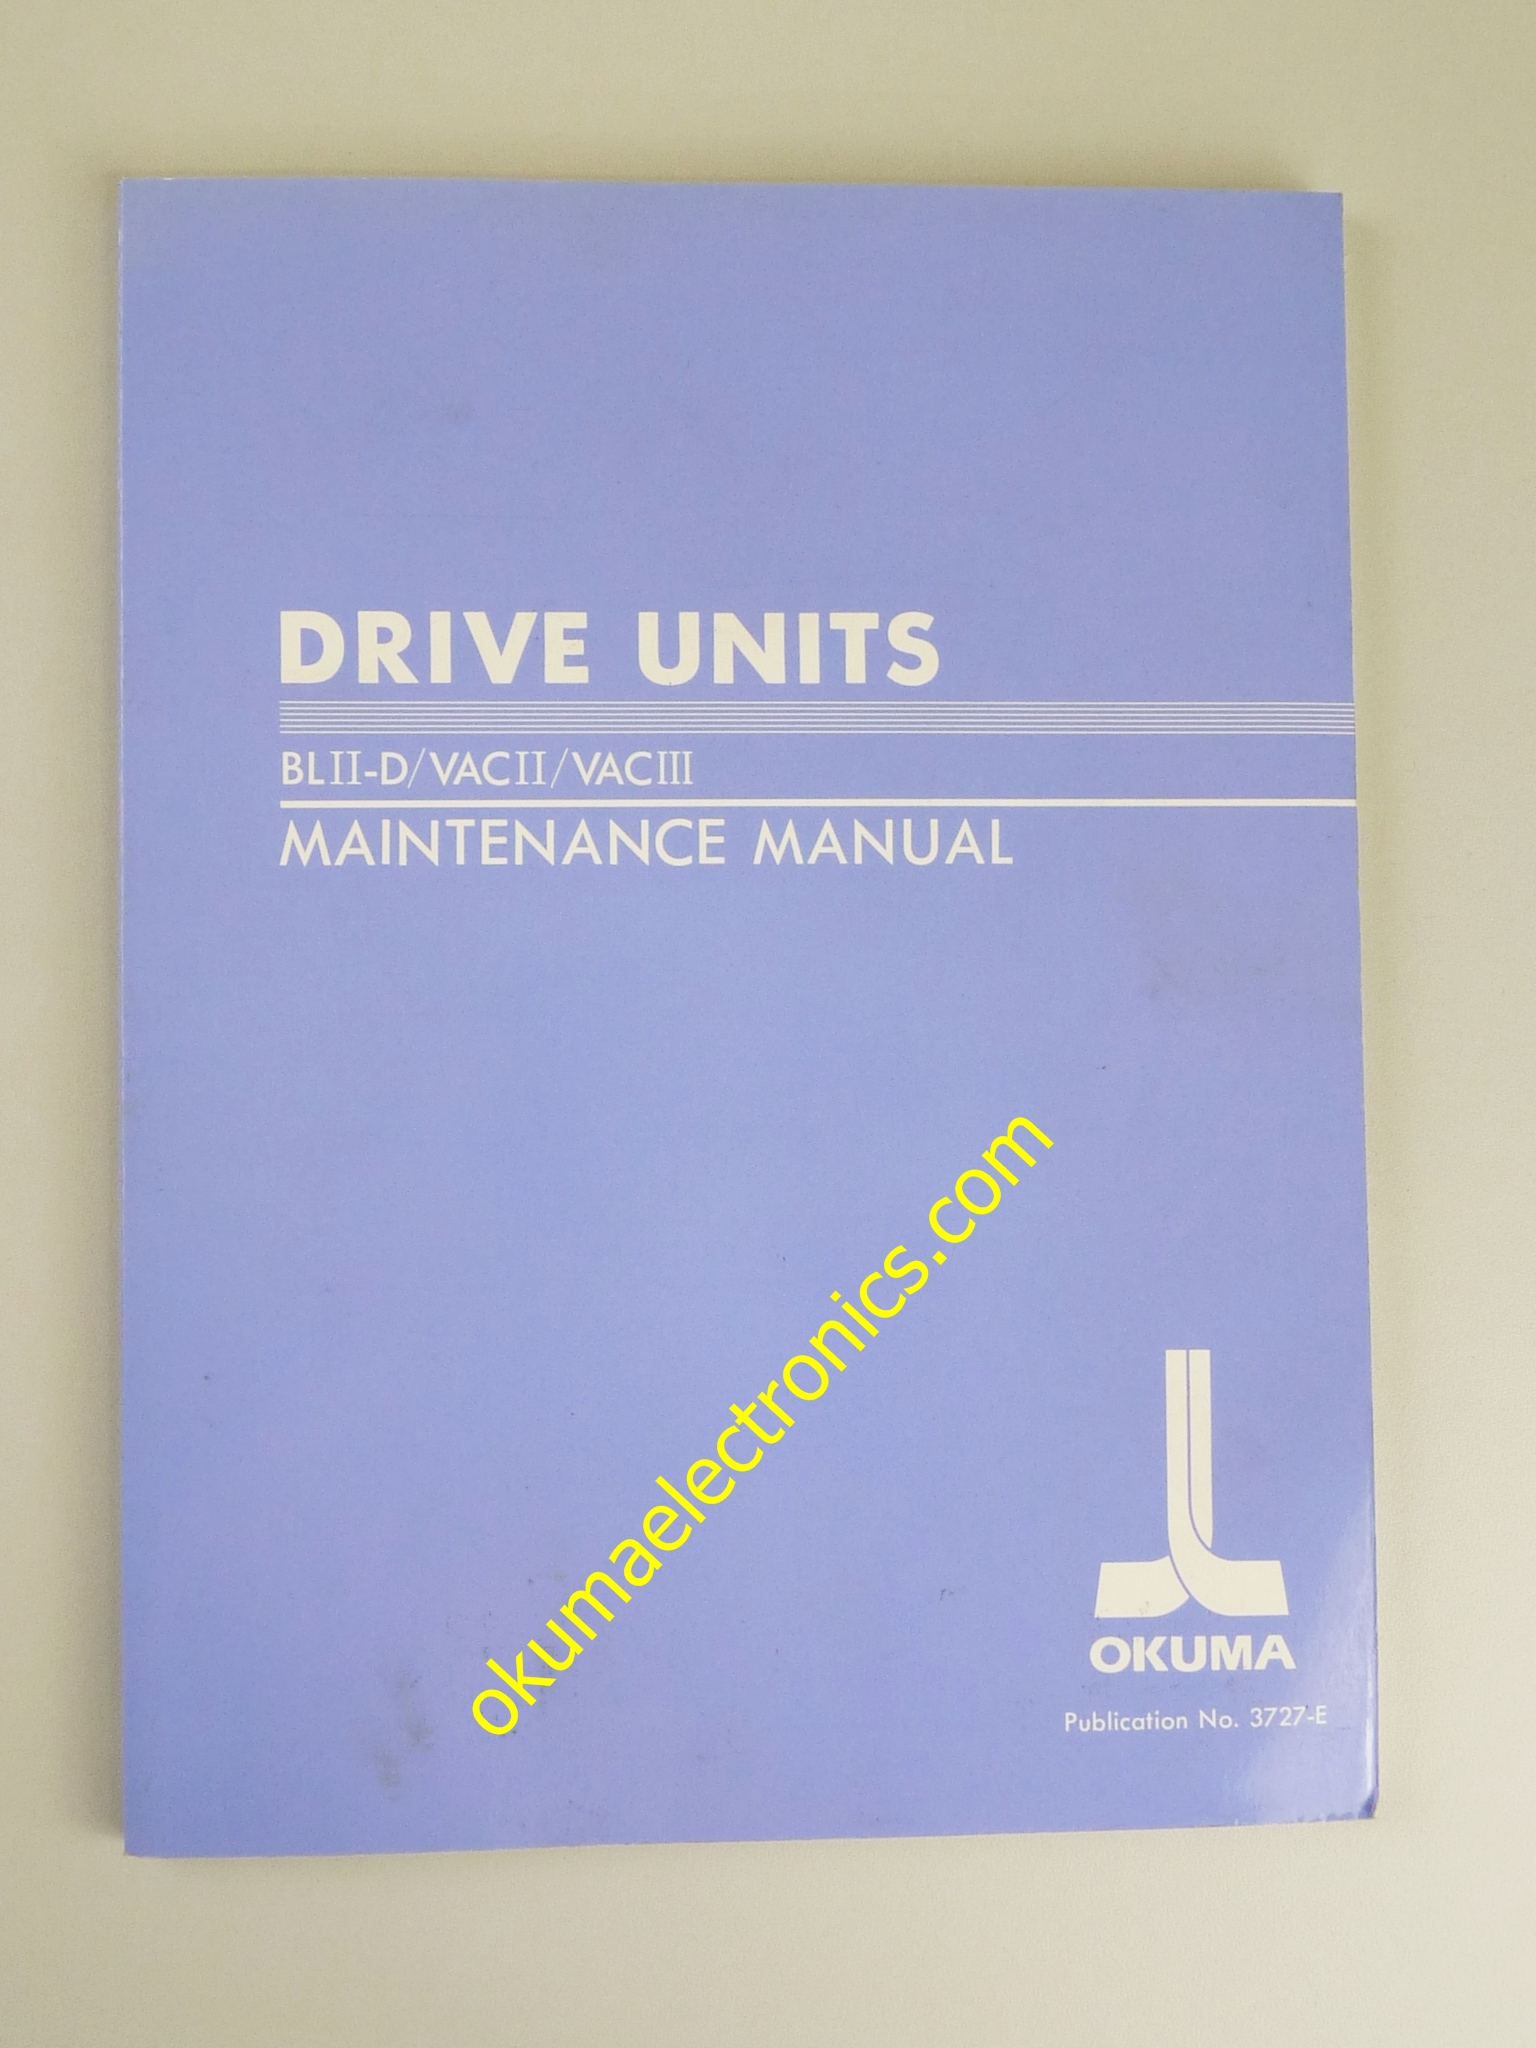 Drive Units Manual